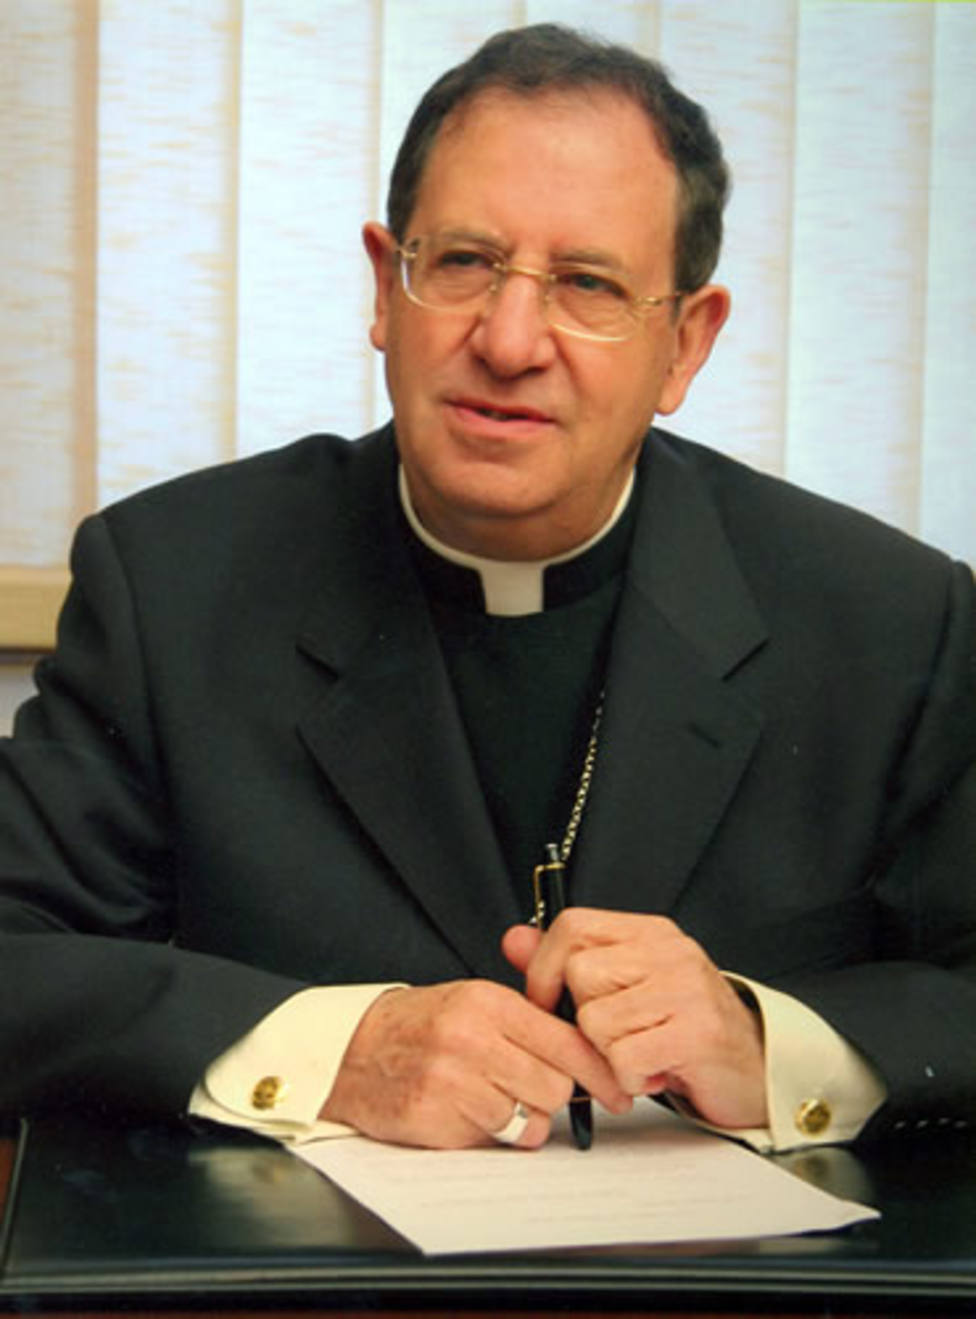 Fallece el obispo emérito de Alicante, D. Rafael Palmero Ramos